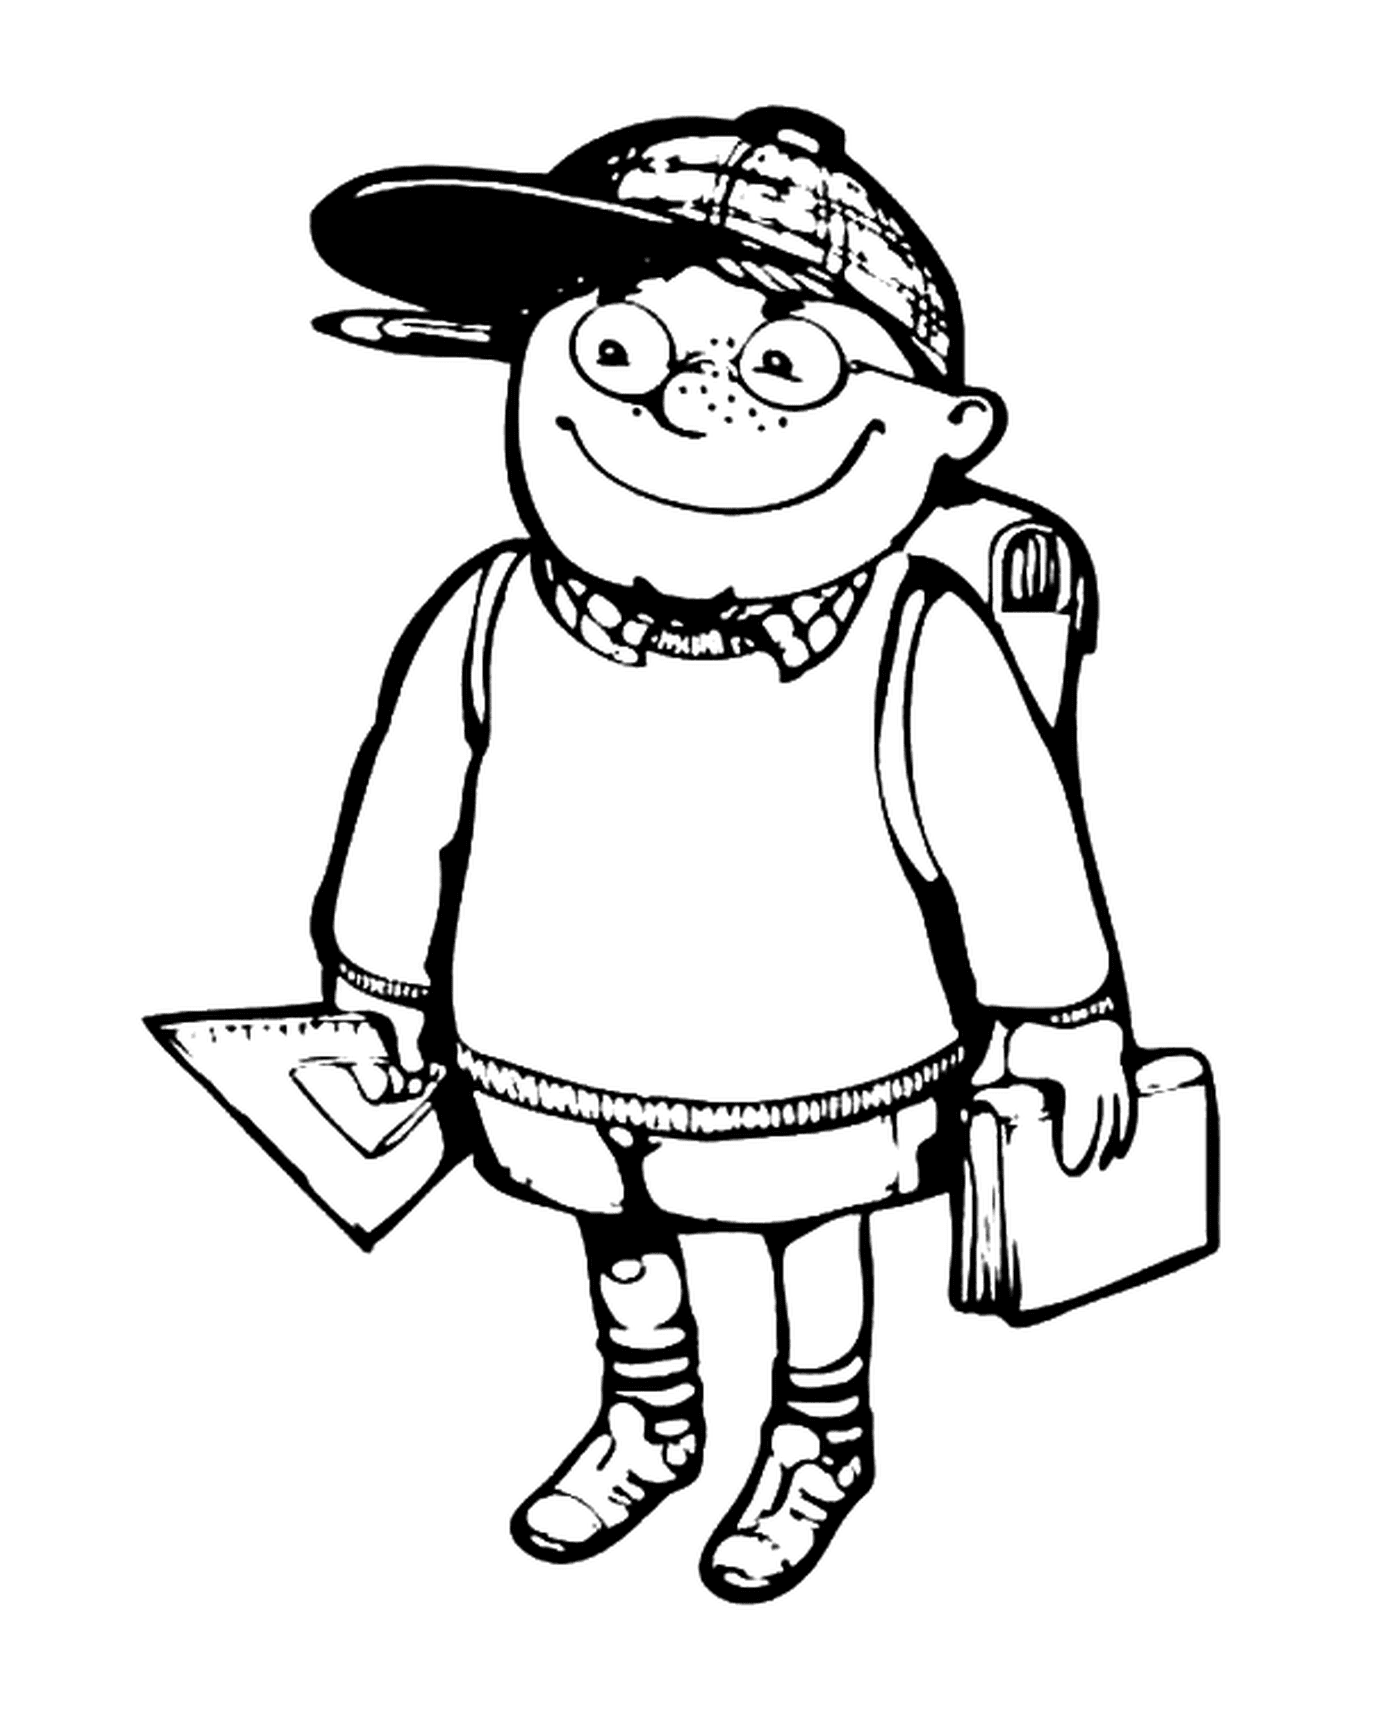  Ein Junge, der mit einem Rucksack zur Schule geht 